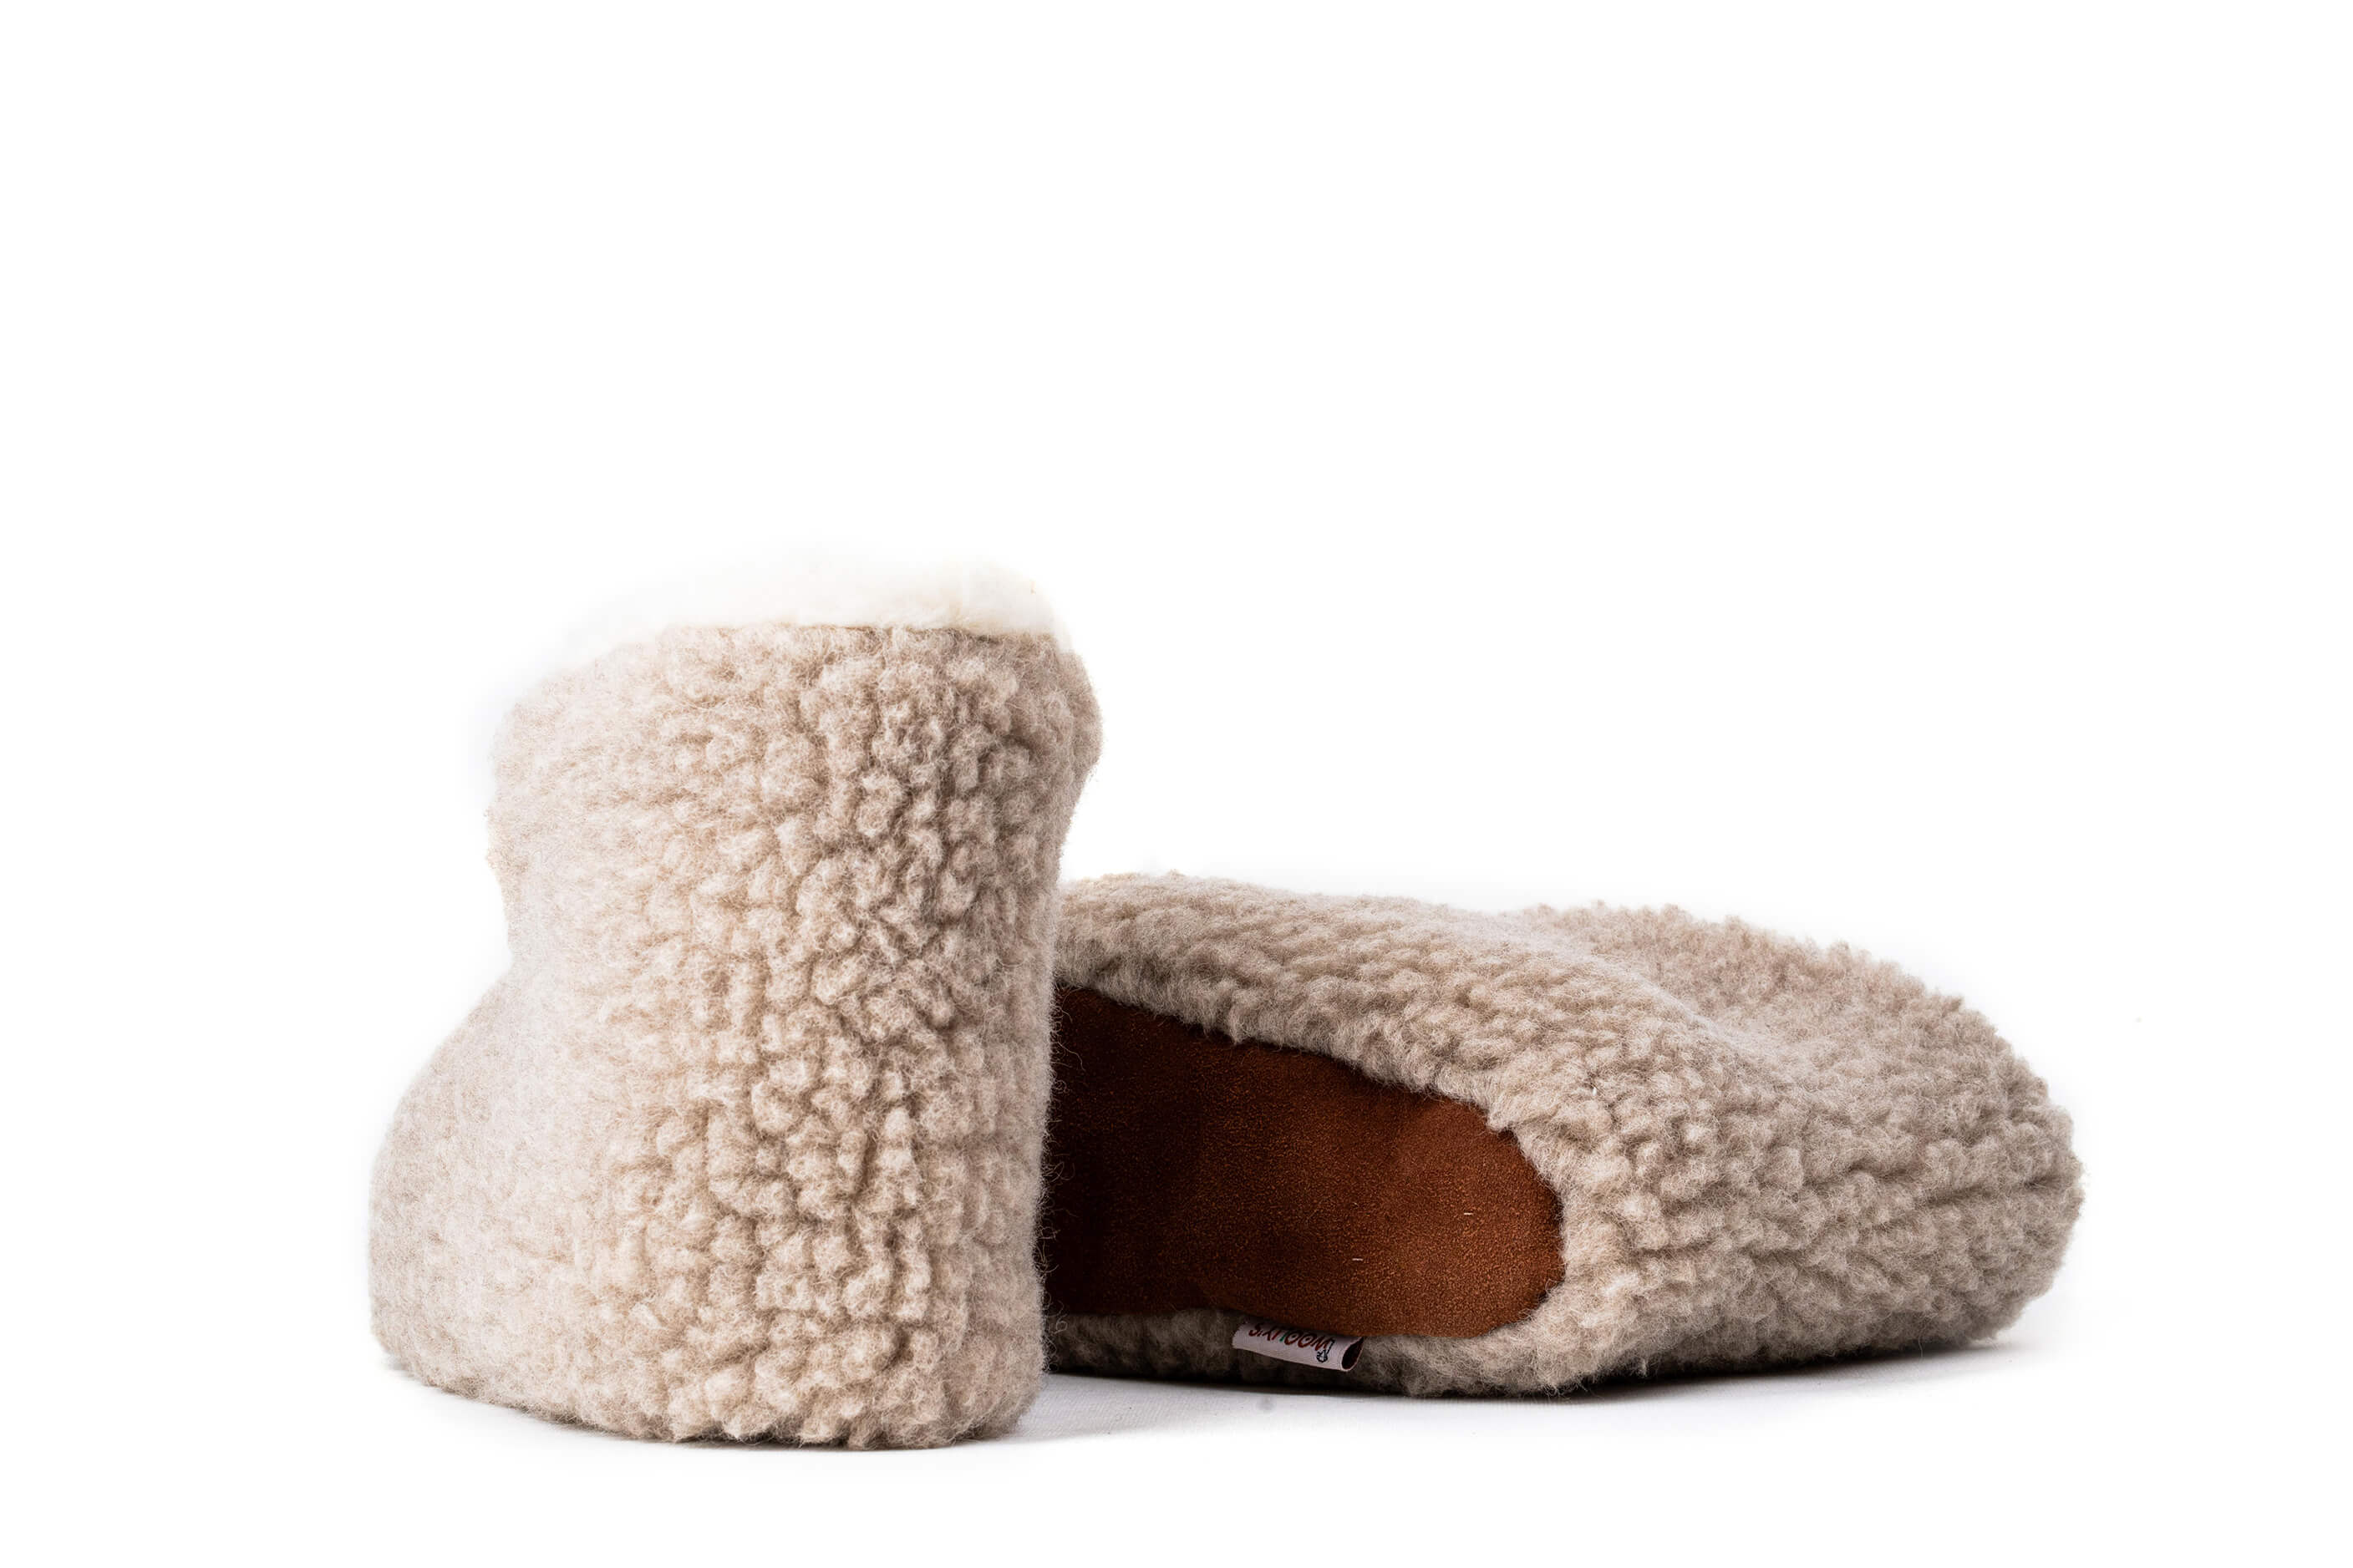 Sherpa Woollen Folding Shoes- Inside White /Outside Light Brown